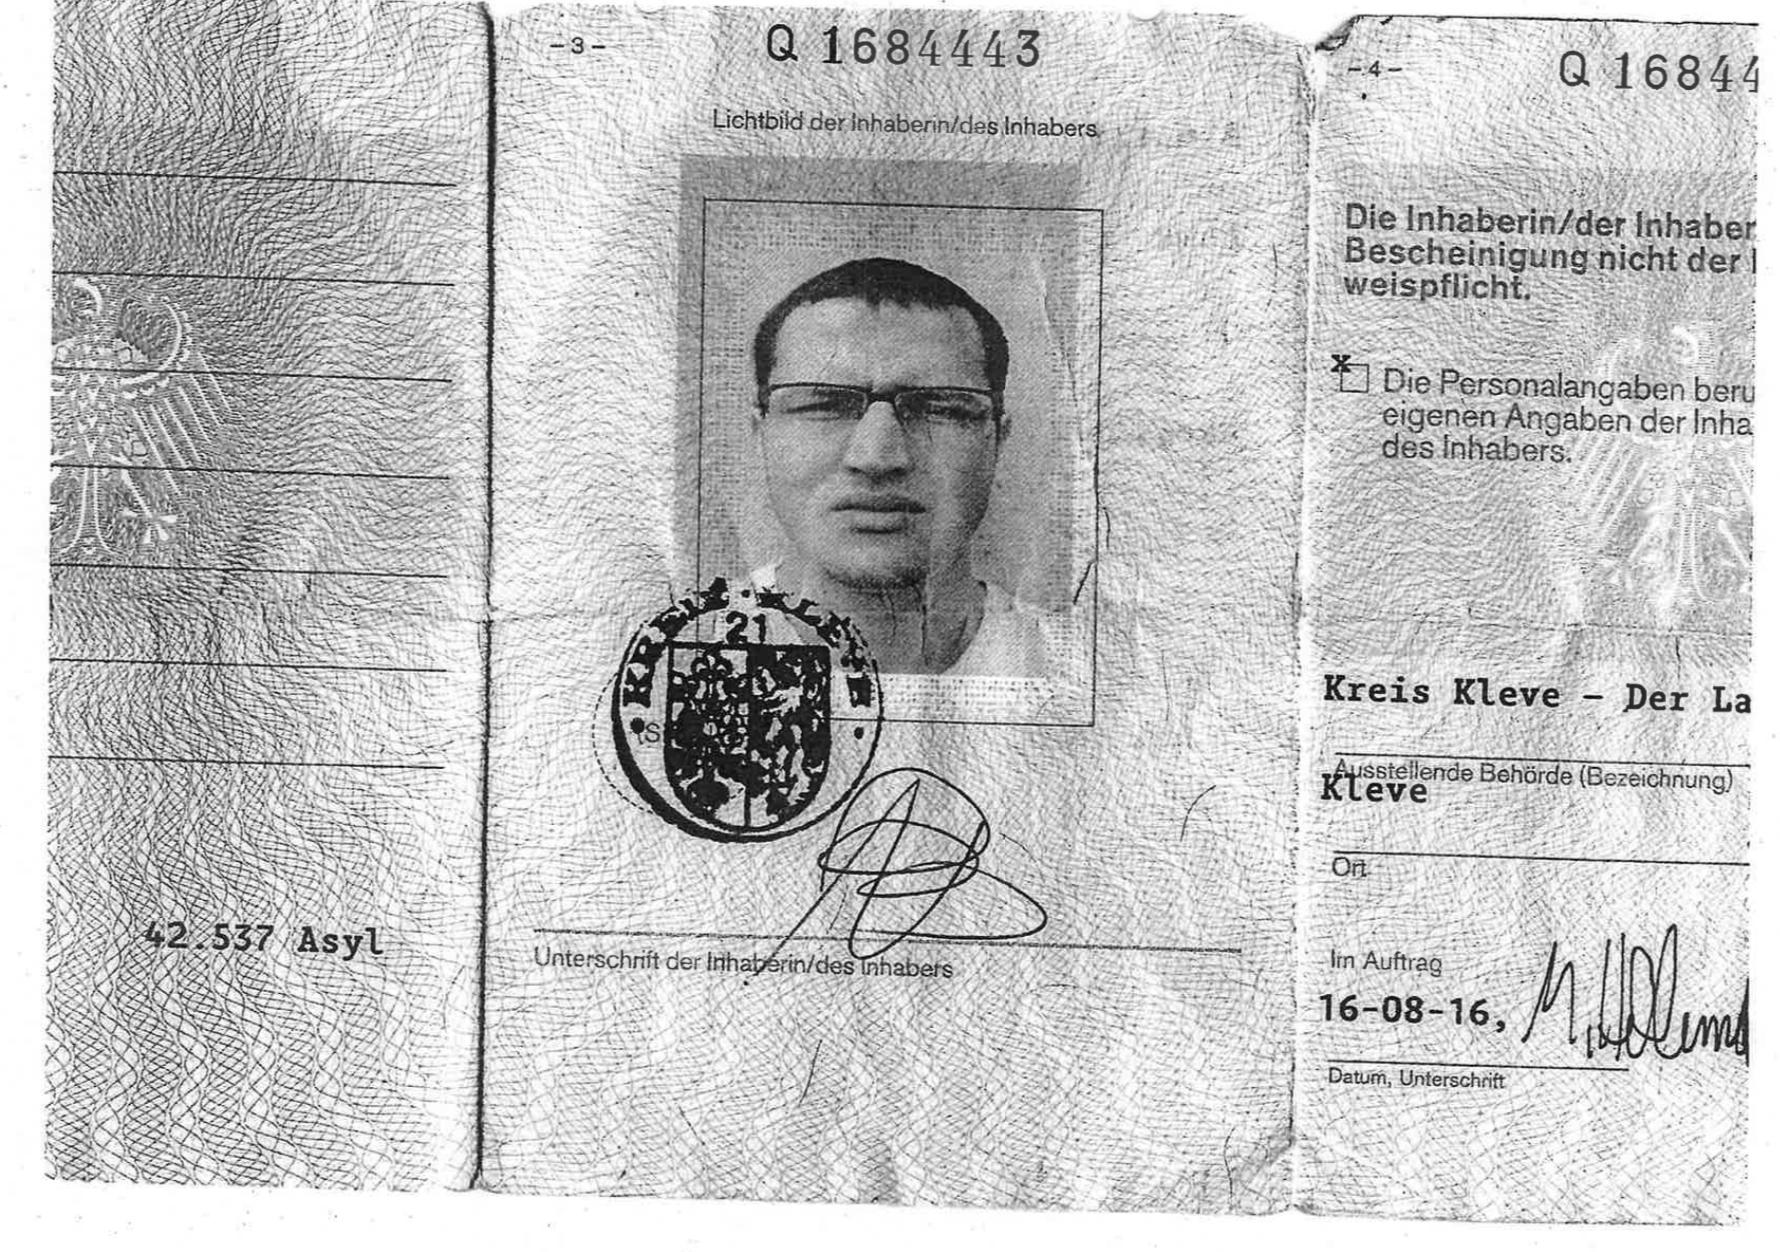 Beweisfoto des Portemonnaies von Amis Amri | Bildquelle: Florian Flade, WDR